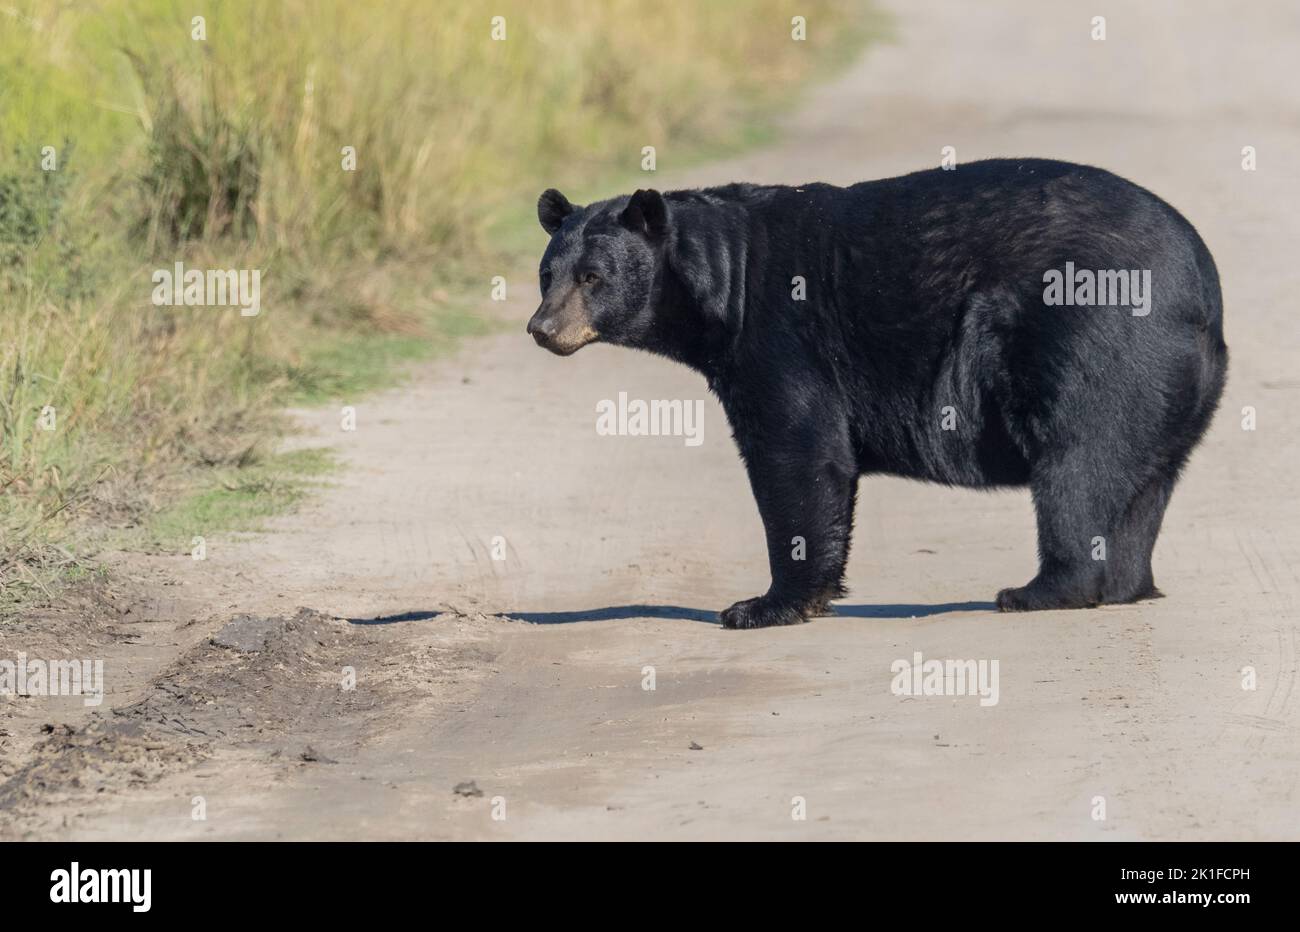 American Black Bear (Ursus americanus)  crossing gravel road Stock Photo